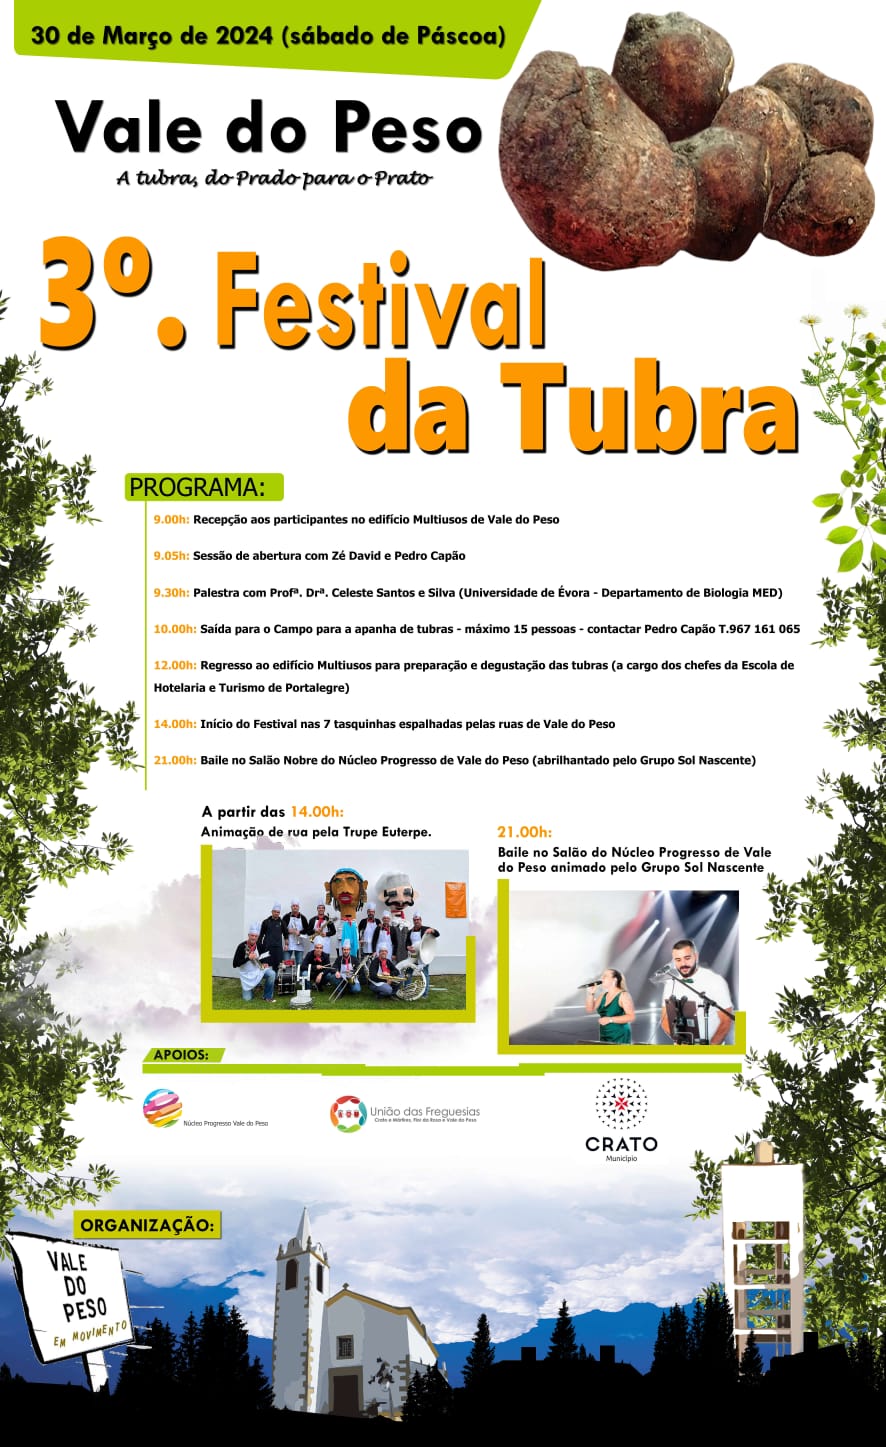 3º Festival da Tubra - Vale do Peso - Agenda Cultural Distrito de Portalegre